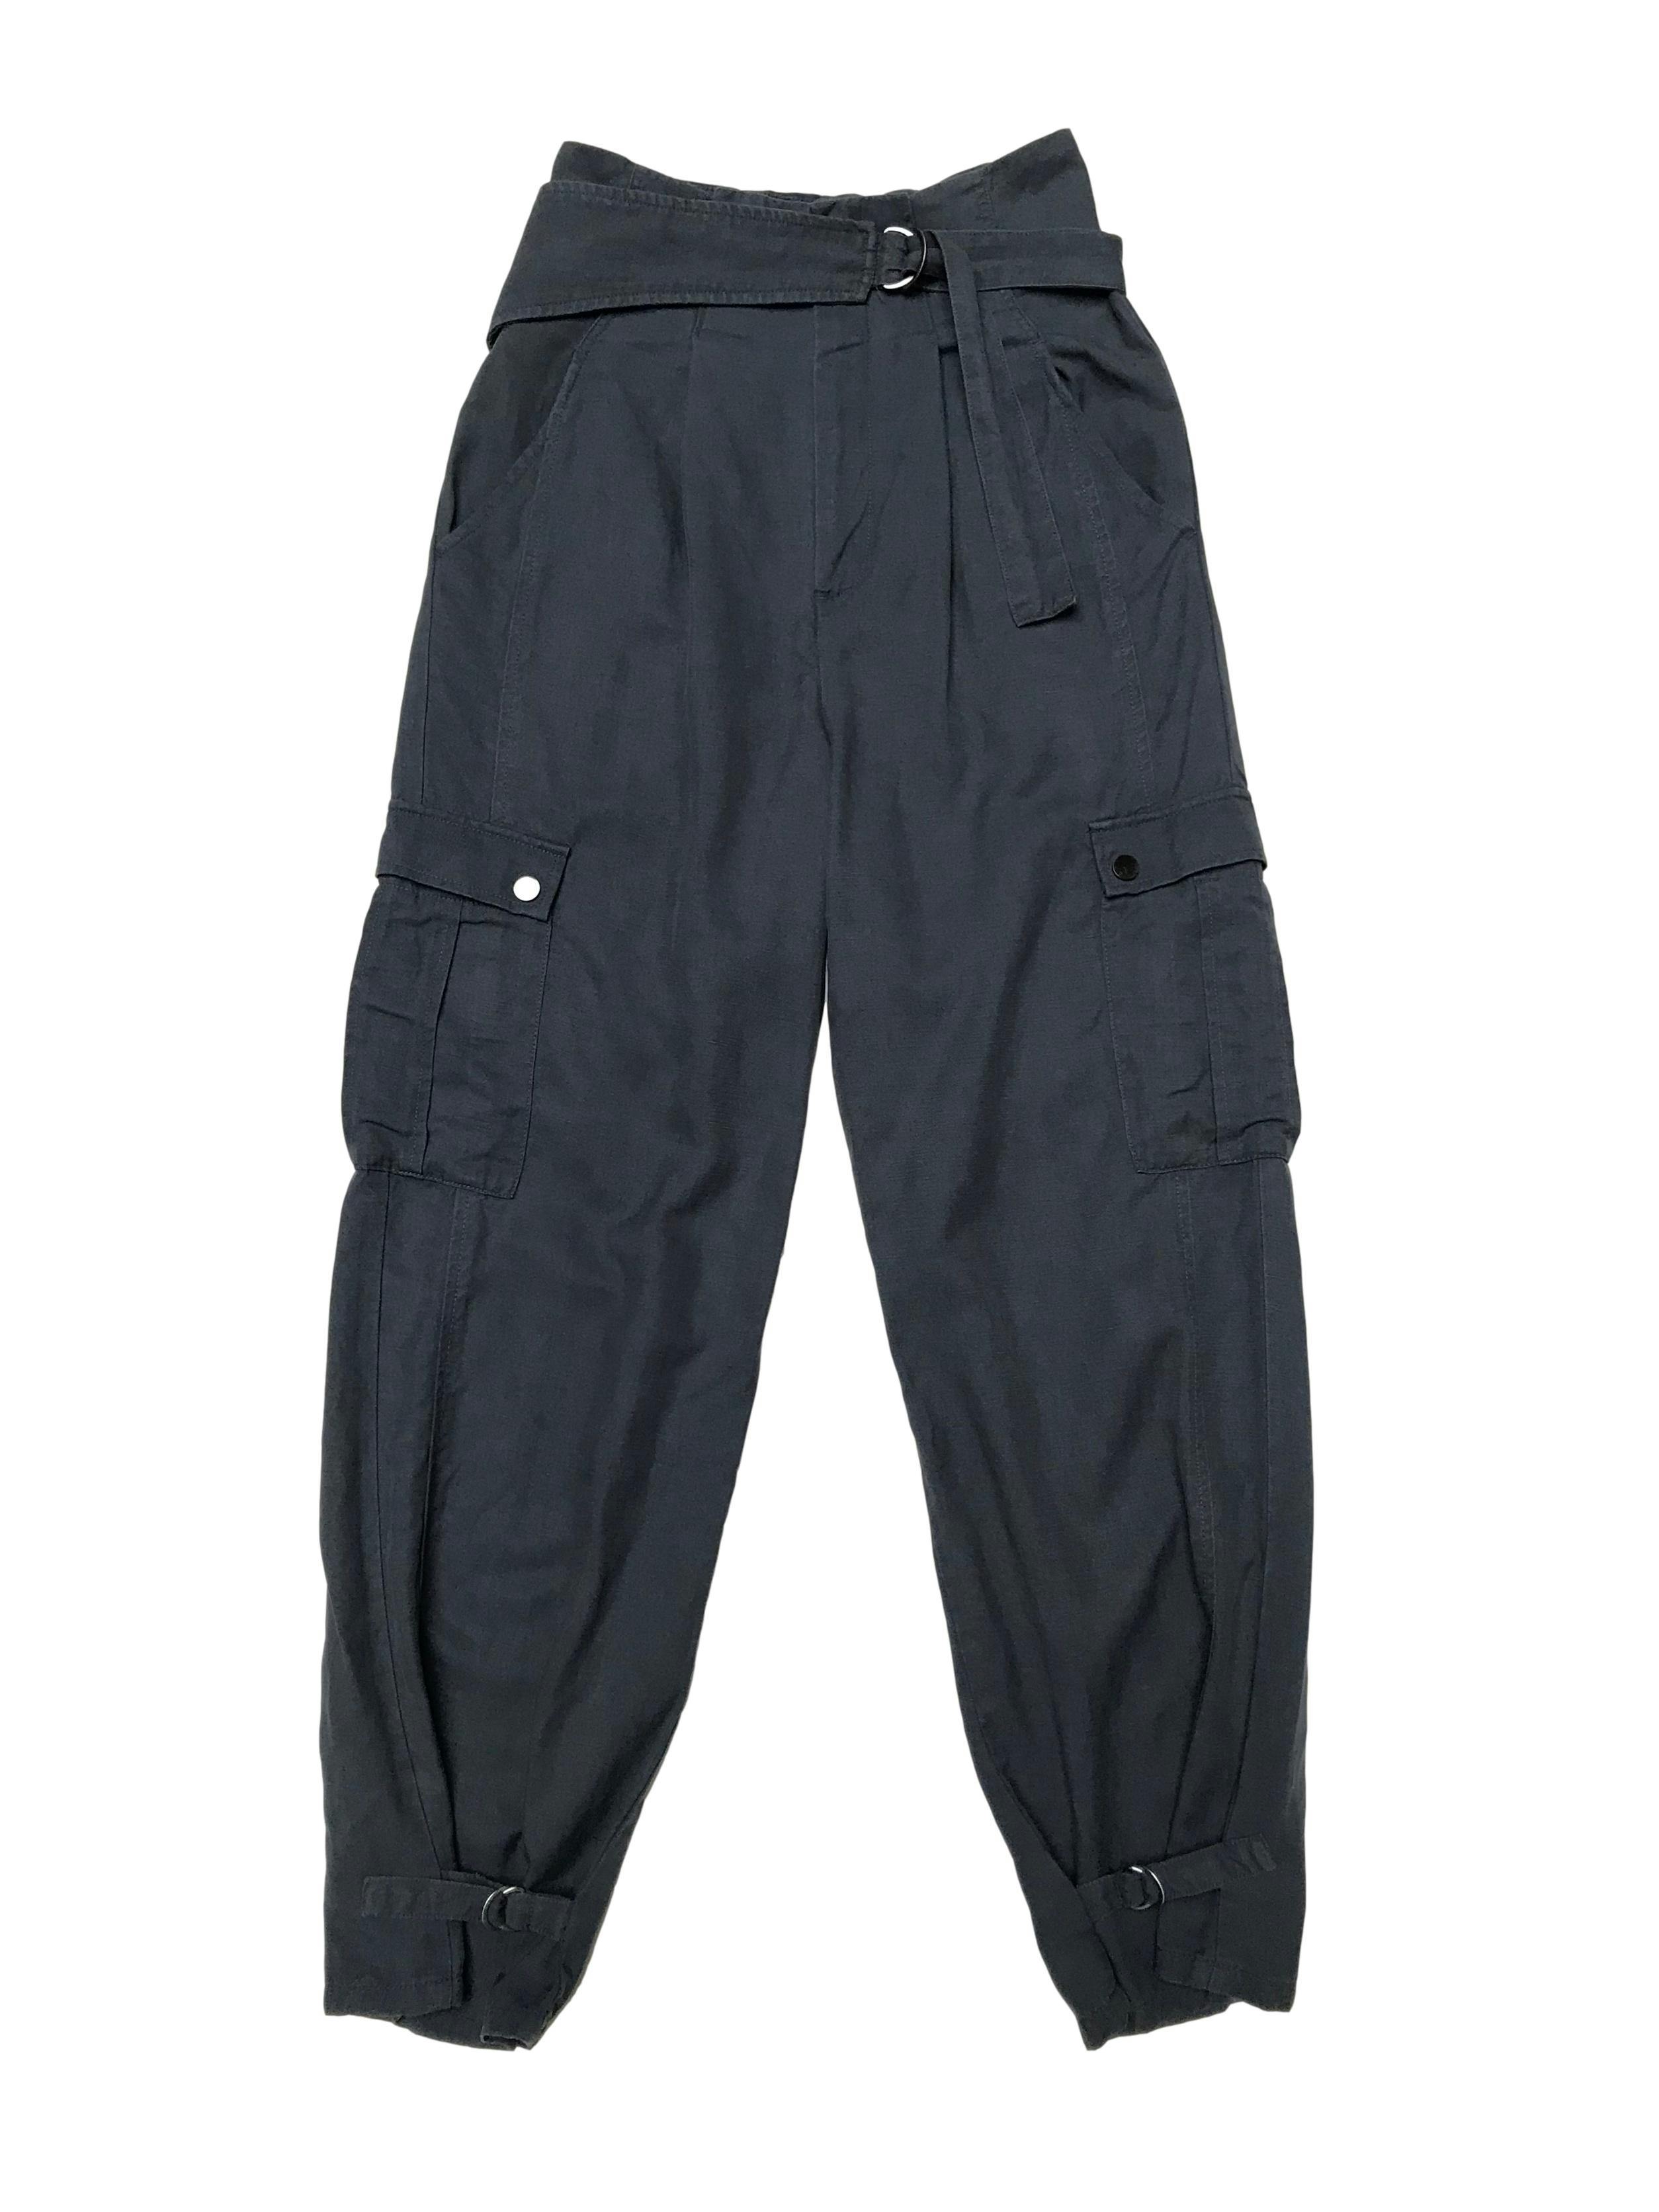 Pantalón cargo Zara de lino y lyocell azul, cintura paper bag con cinturón y correita en la basta. Cintura 68cm